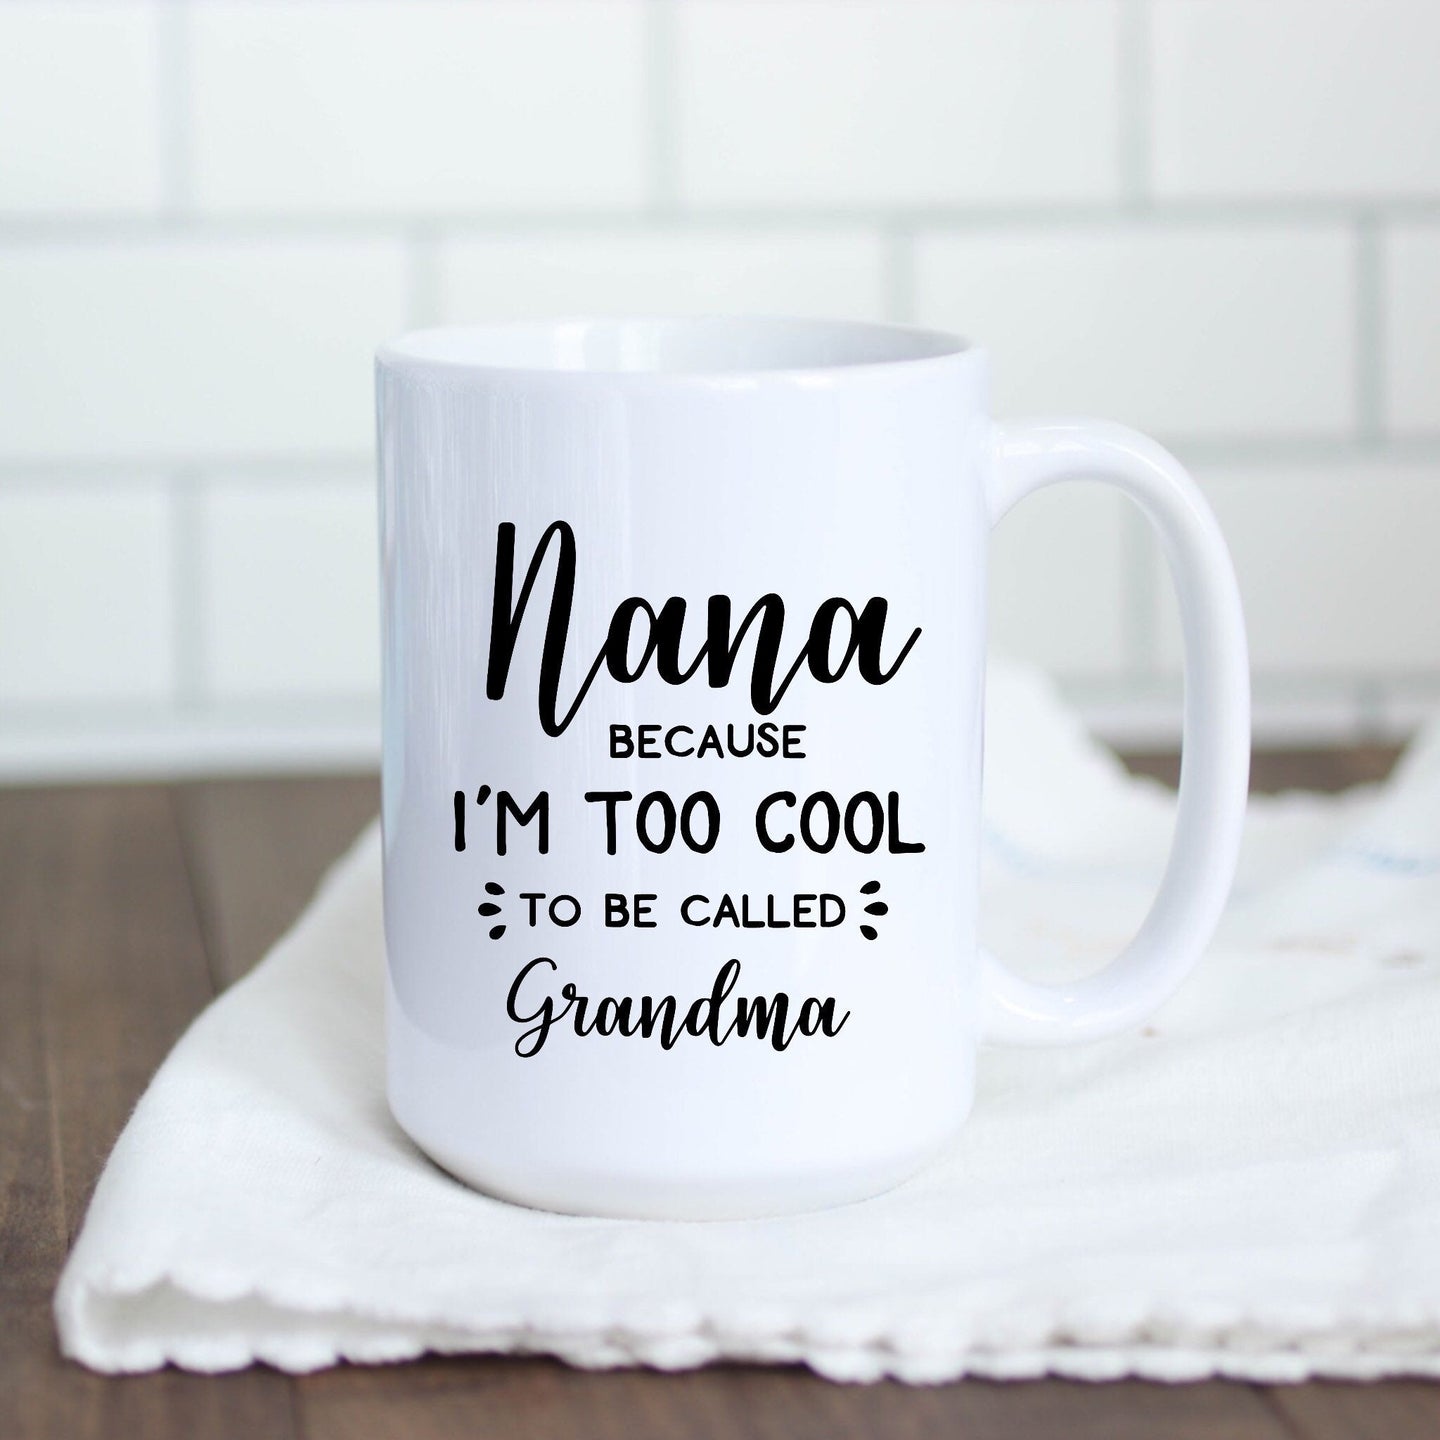 Nana because I'm too cool to be called Grandma